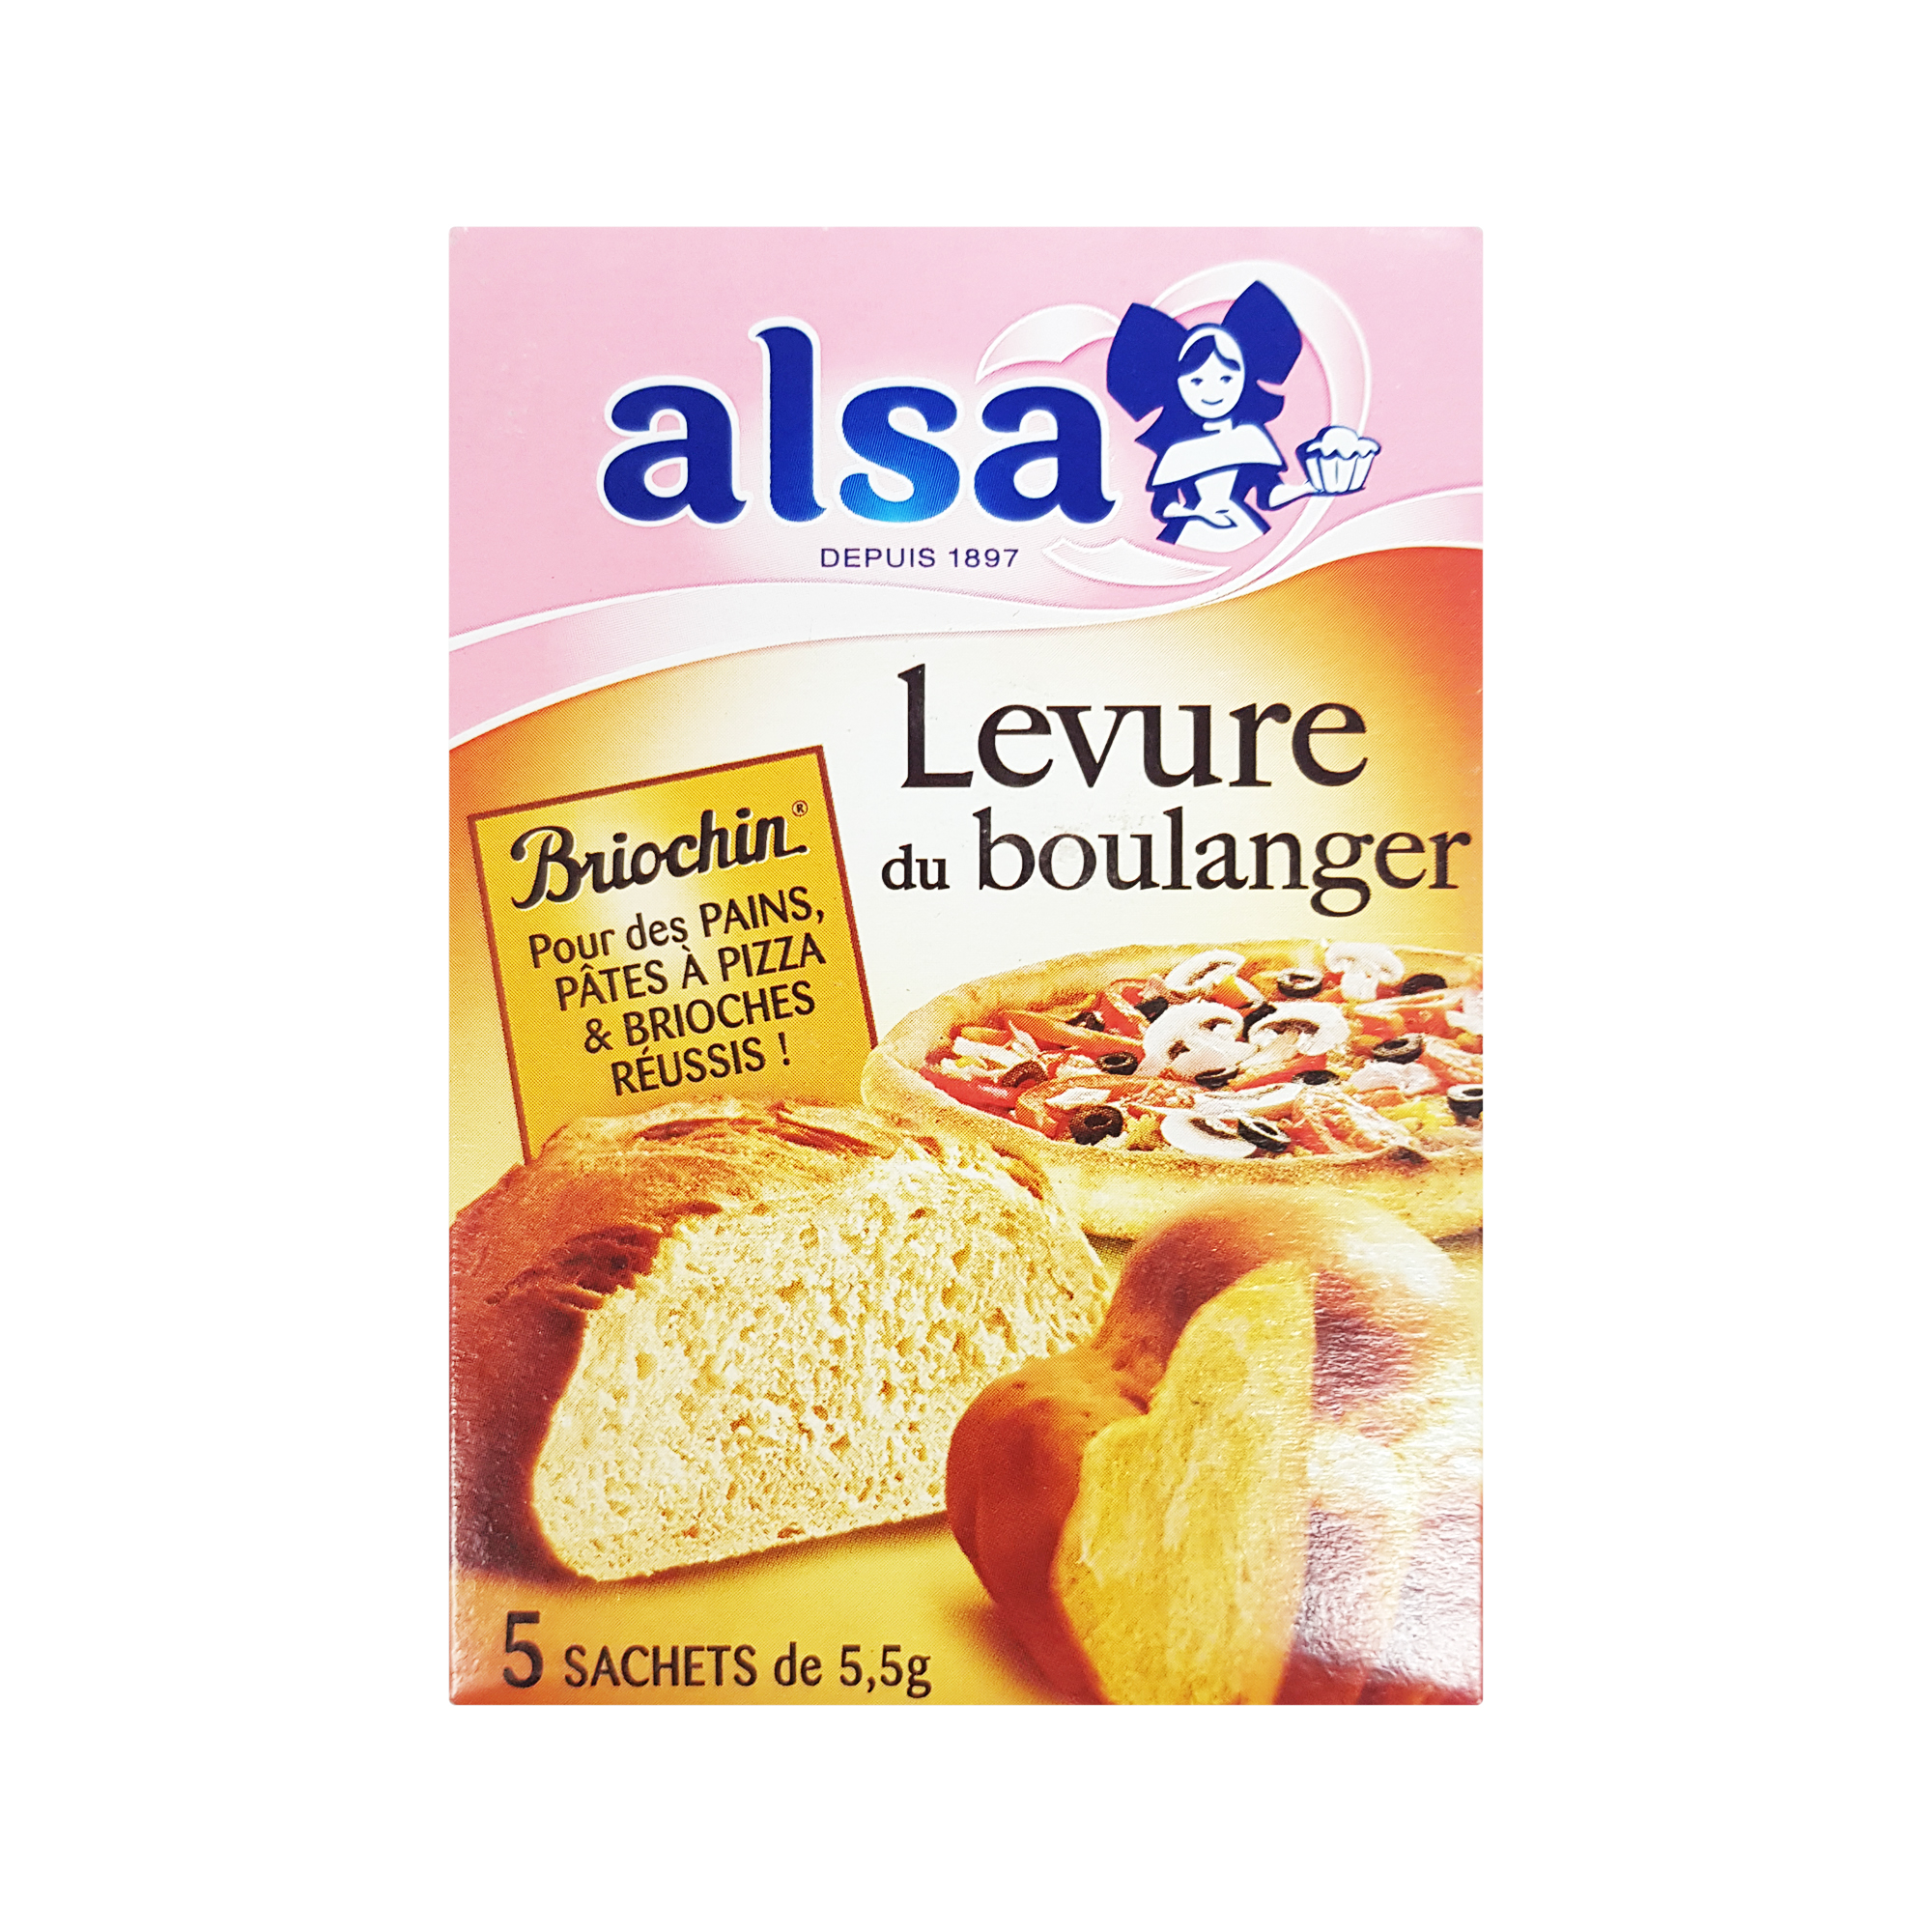 Alsa Yeast for Bread & Brioche (27.5g)